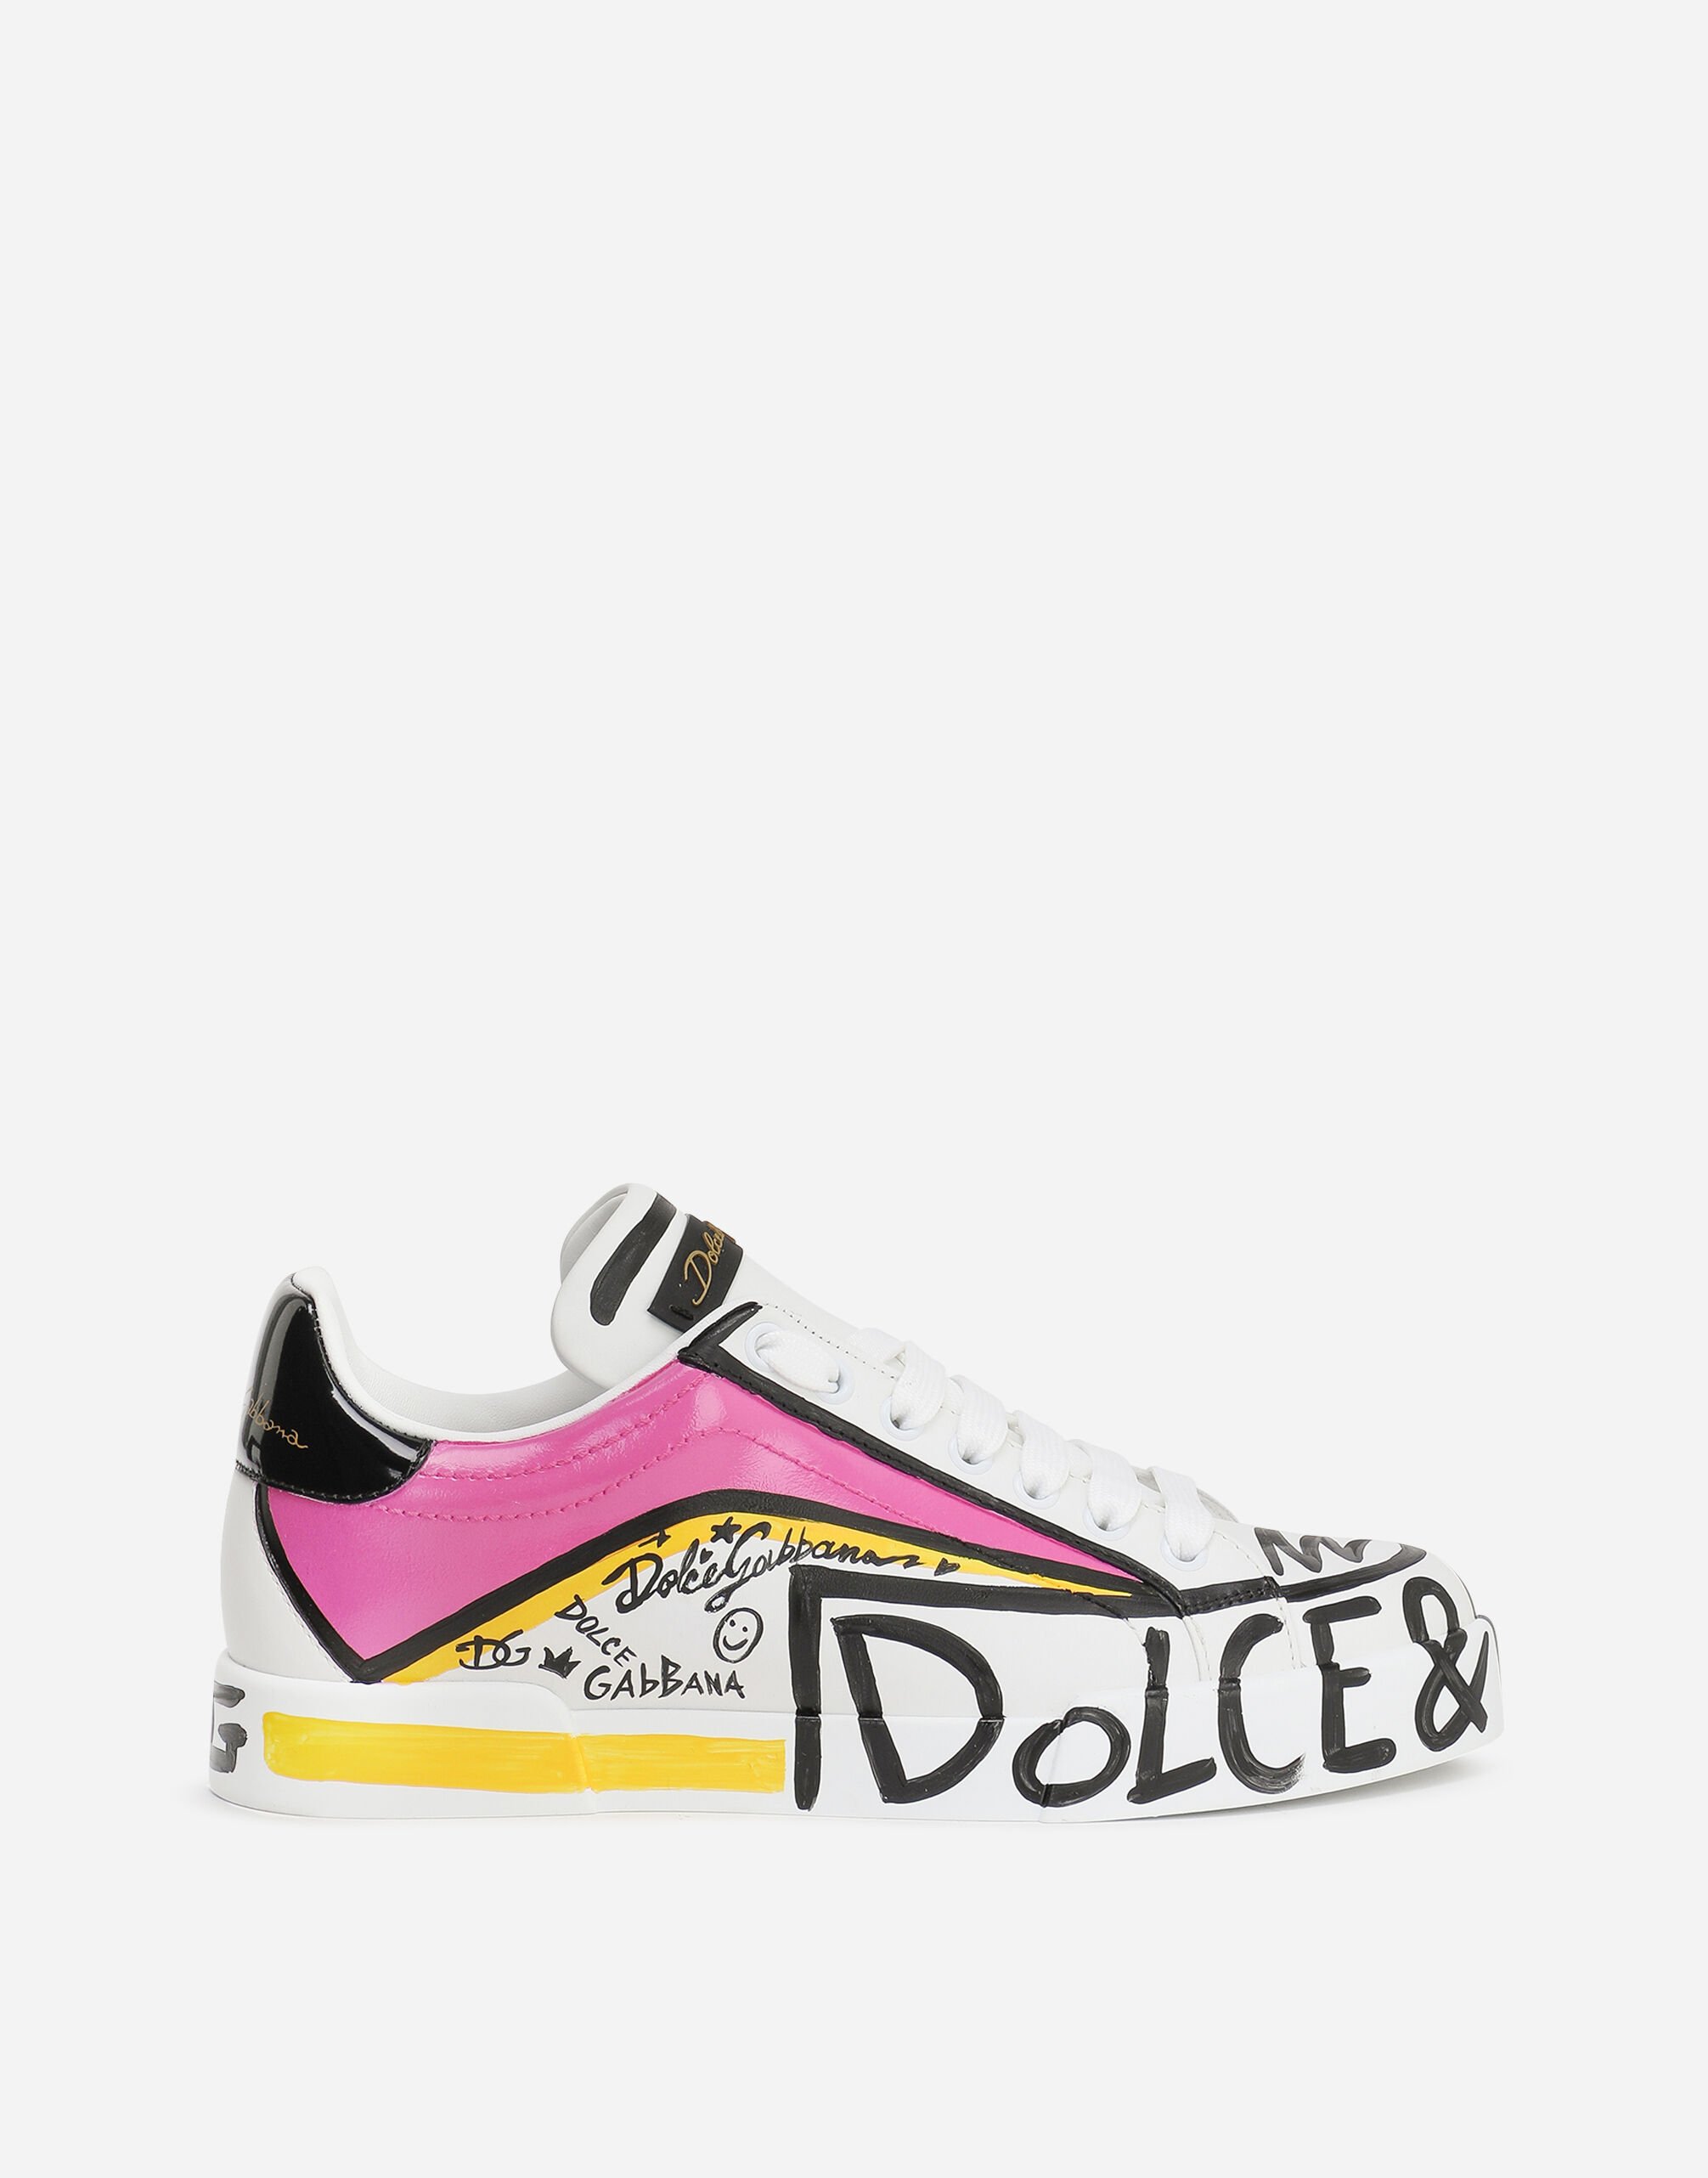 Dolce & Gabbana Limited edition Portofino sneakers Multicolor CK1563B5991